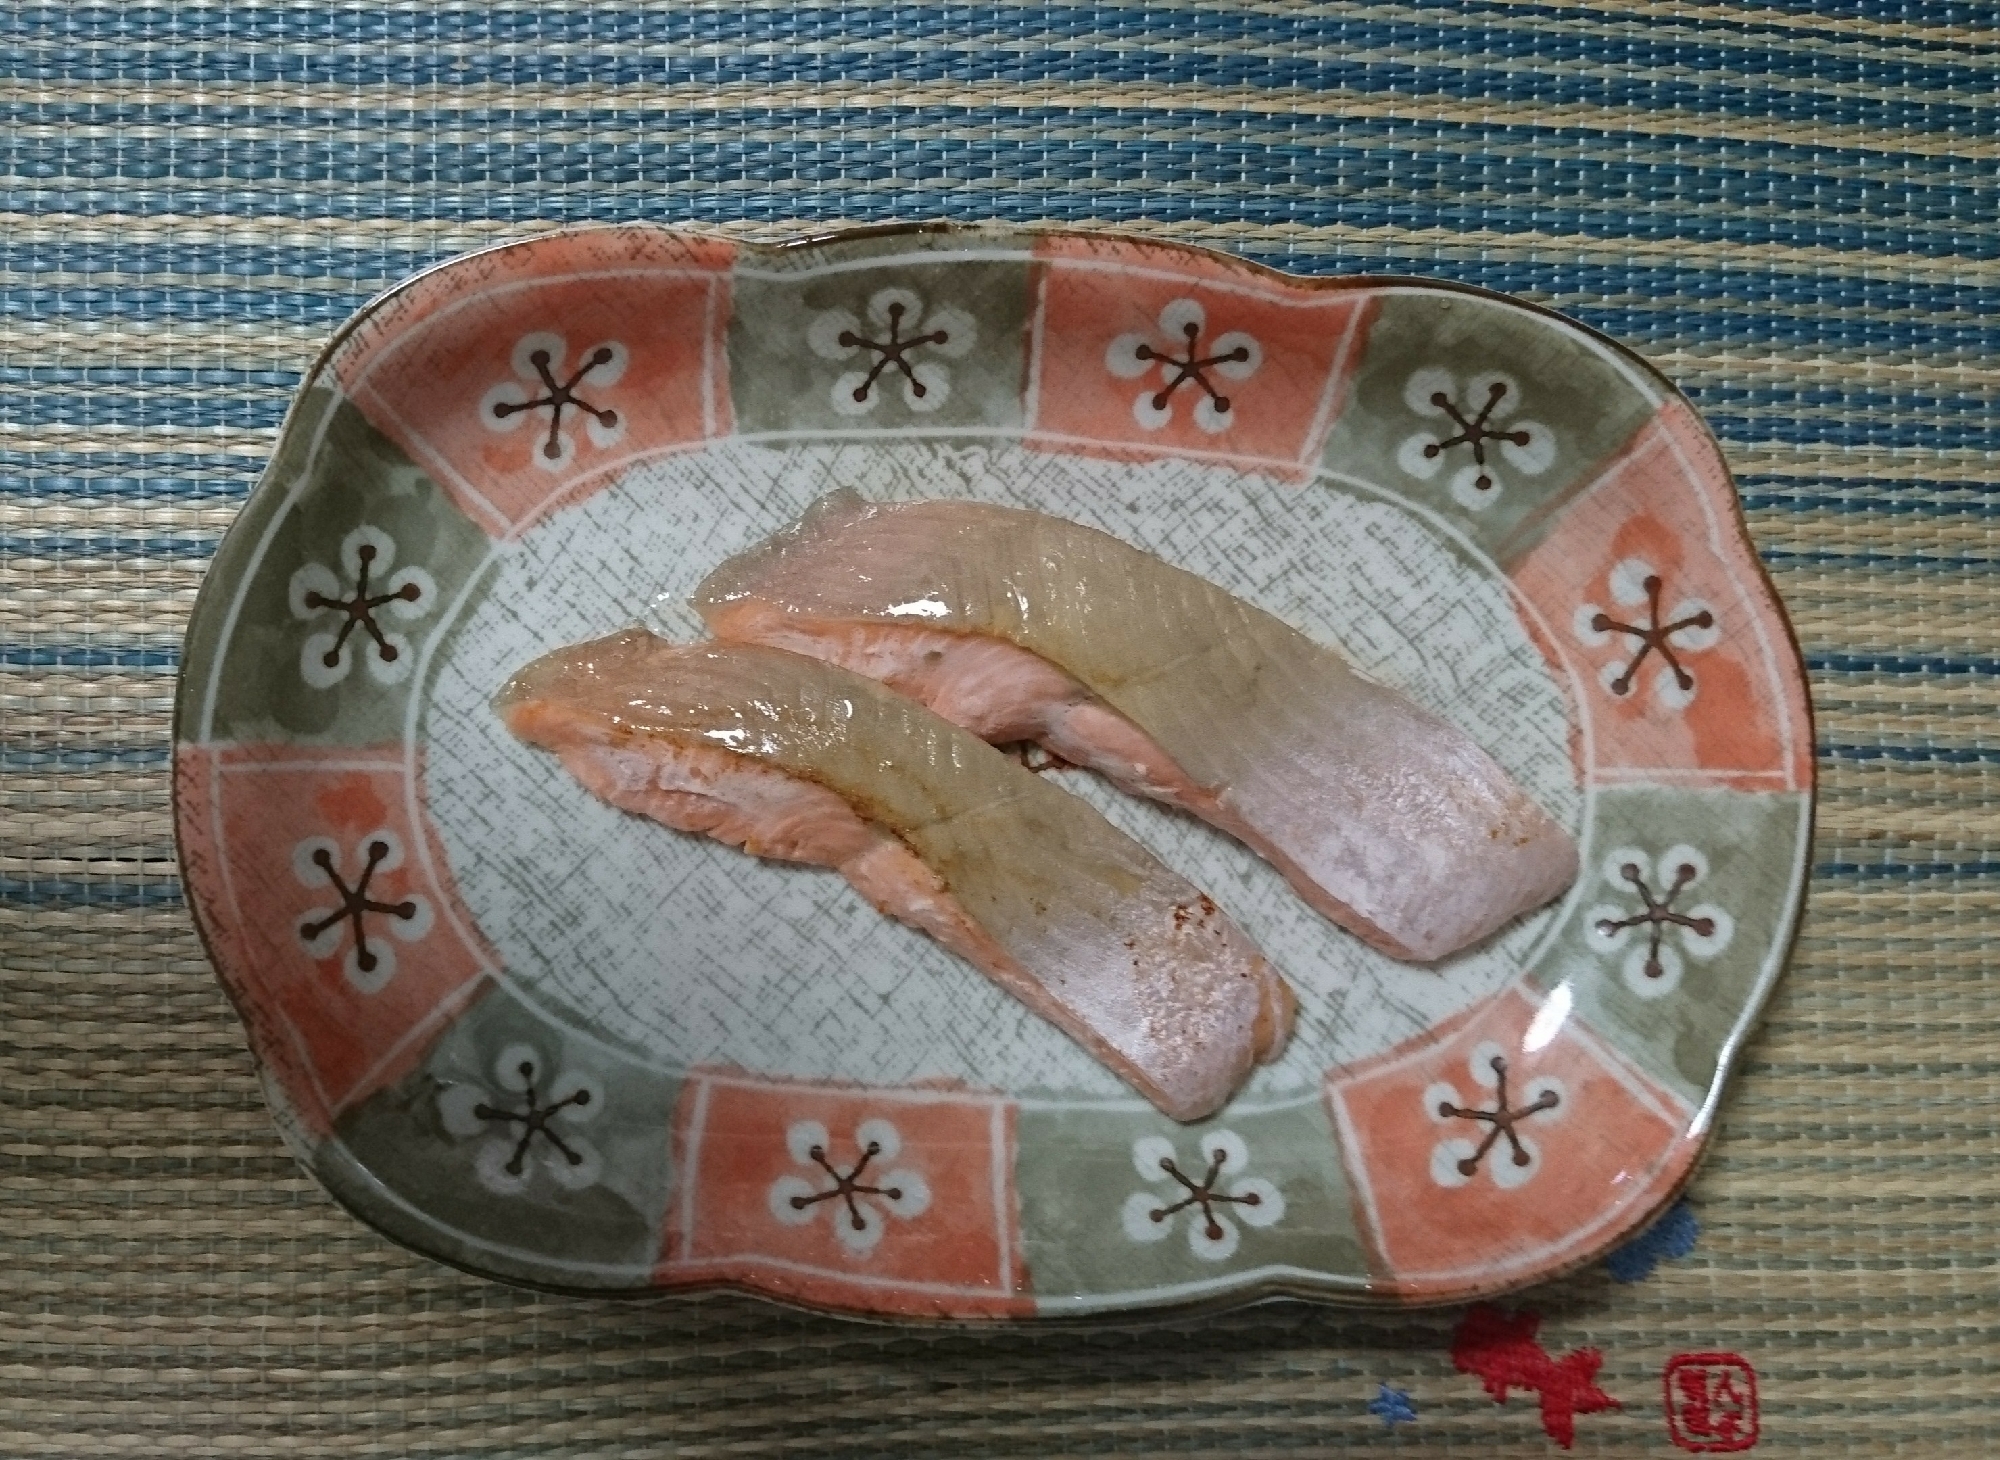 鮭のムニエル～✨バター焼き